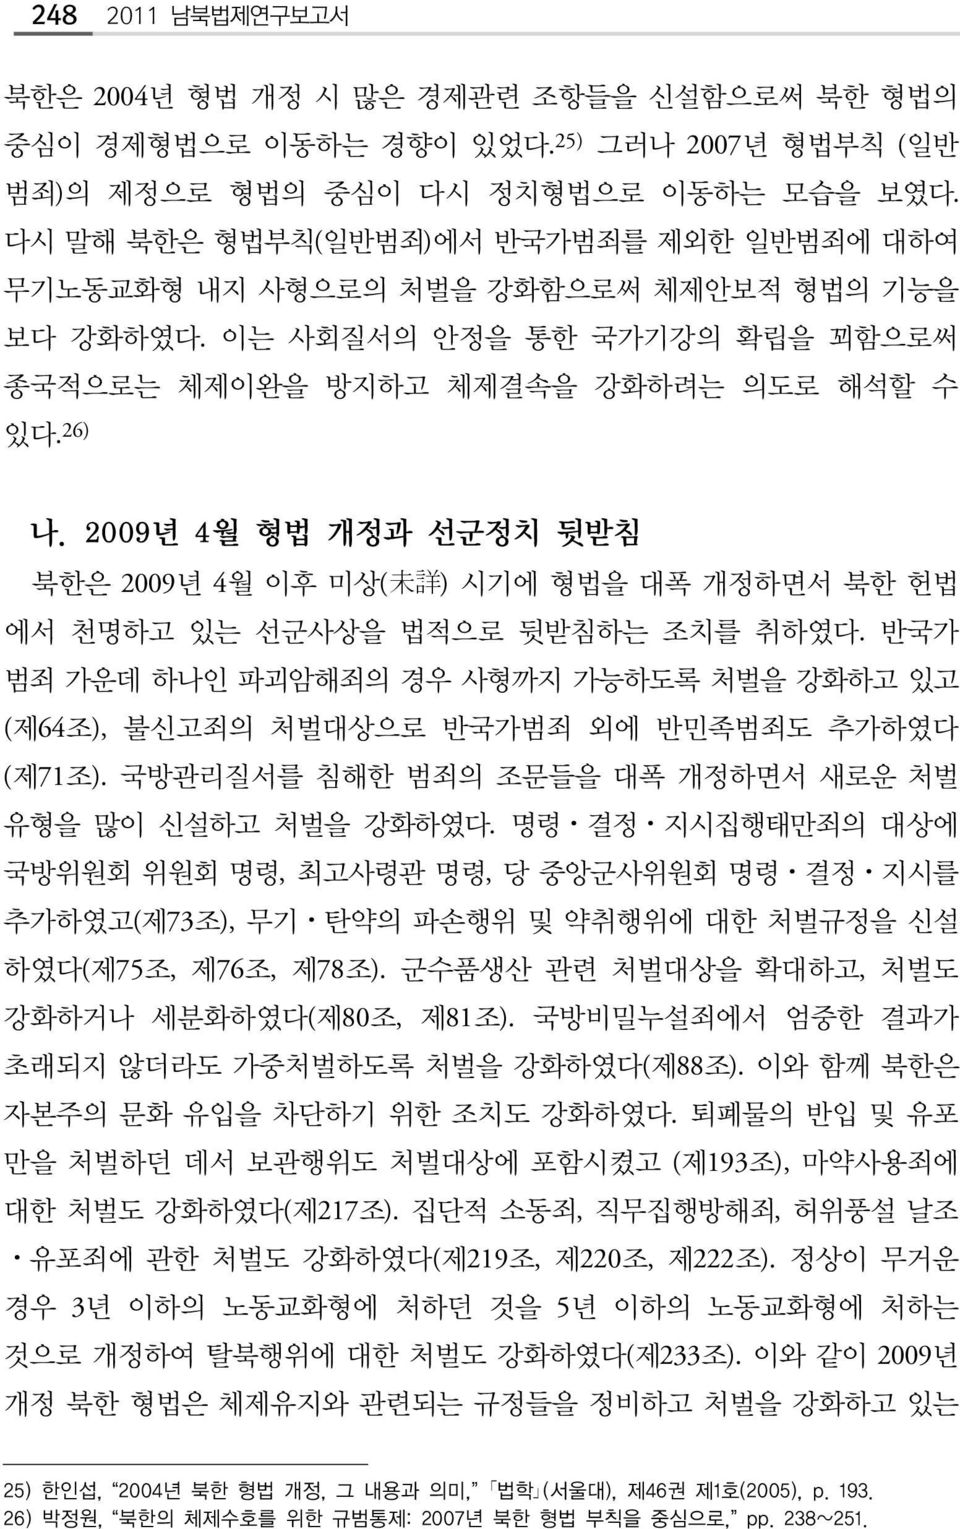 2009년 4월 형법 개정과 선군정치 뒷받침 북한은 2009년 4월 이후 미상( 未 詳 ) 시기에 형법을 대폭 개정하면서 북한 헌법 에서 천명하고 있는 선군사상을 법적으로 뒷받침하는 조치를 취하였다.